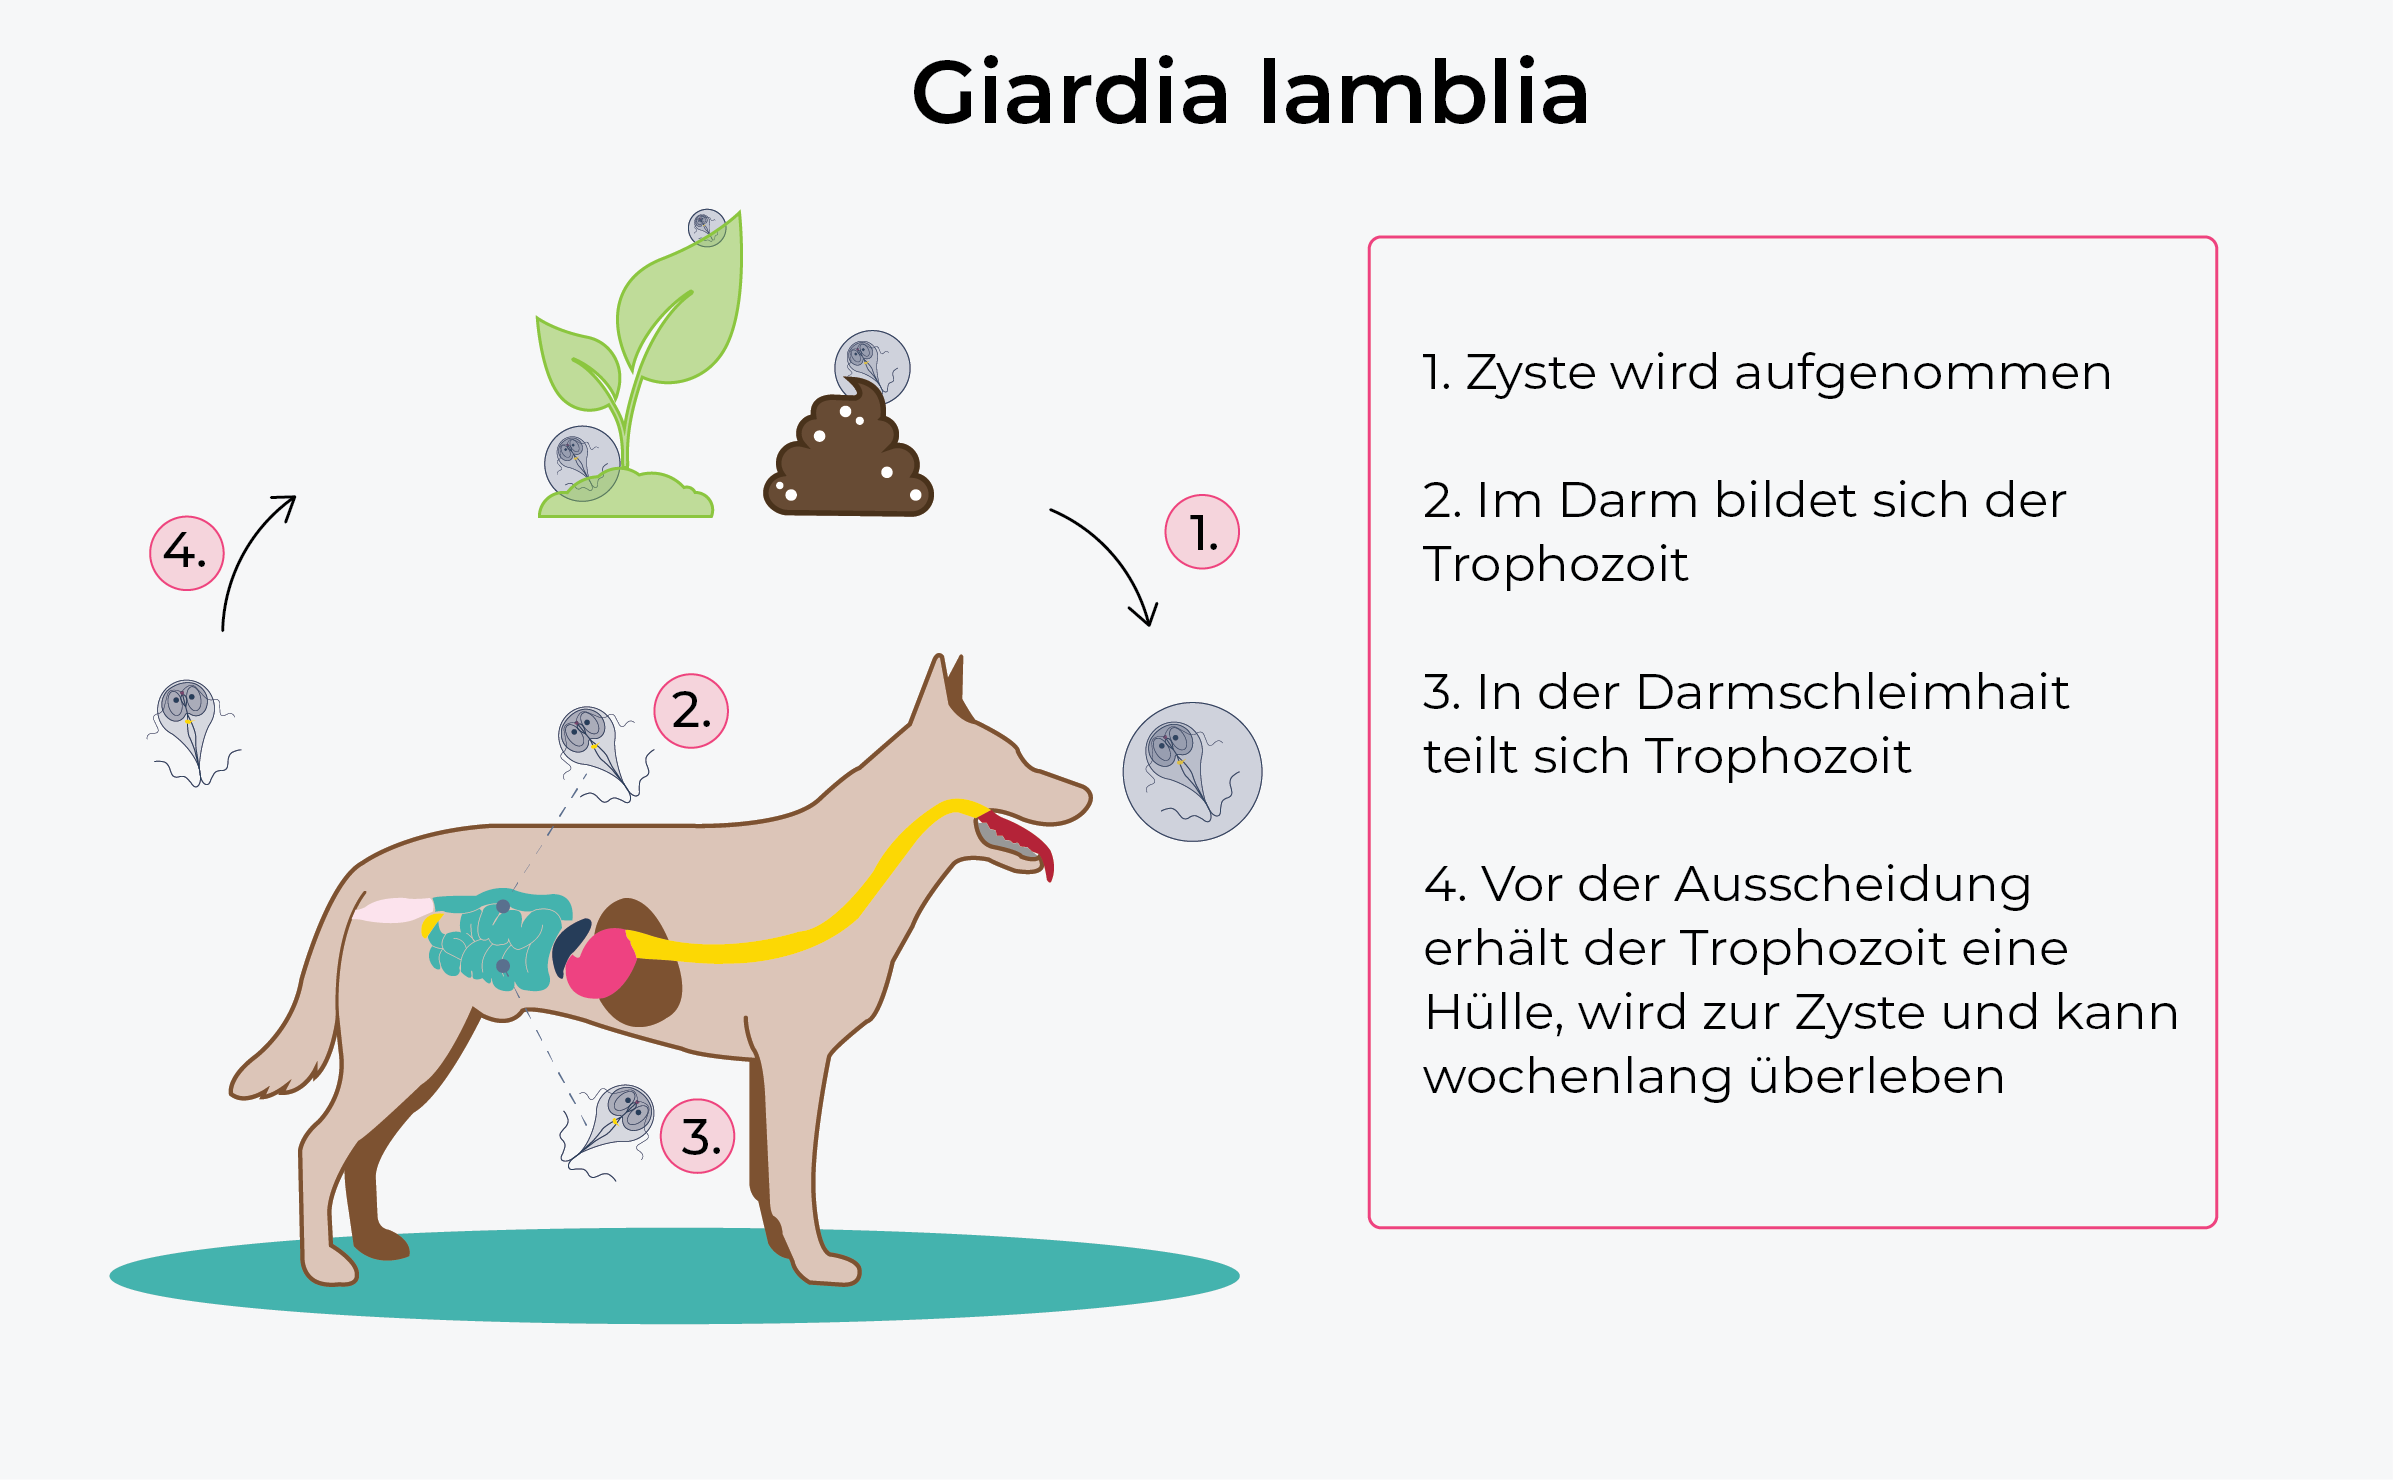 Abbildung: Lebenszyklus von Giardien bei Hunden